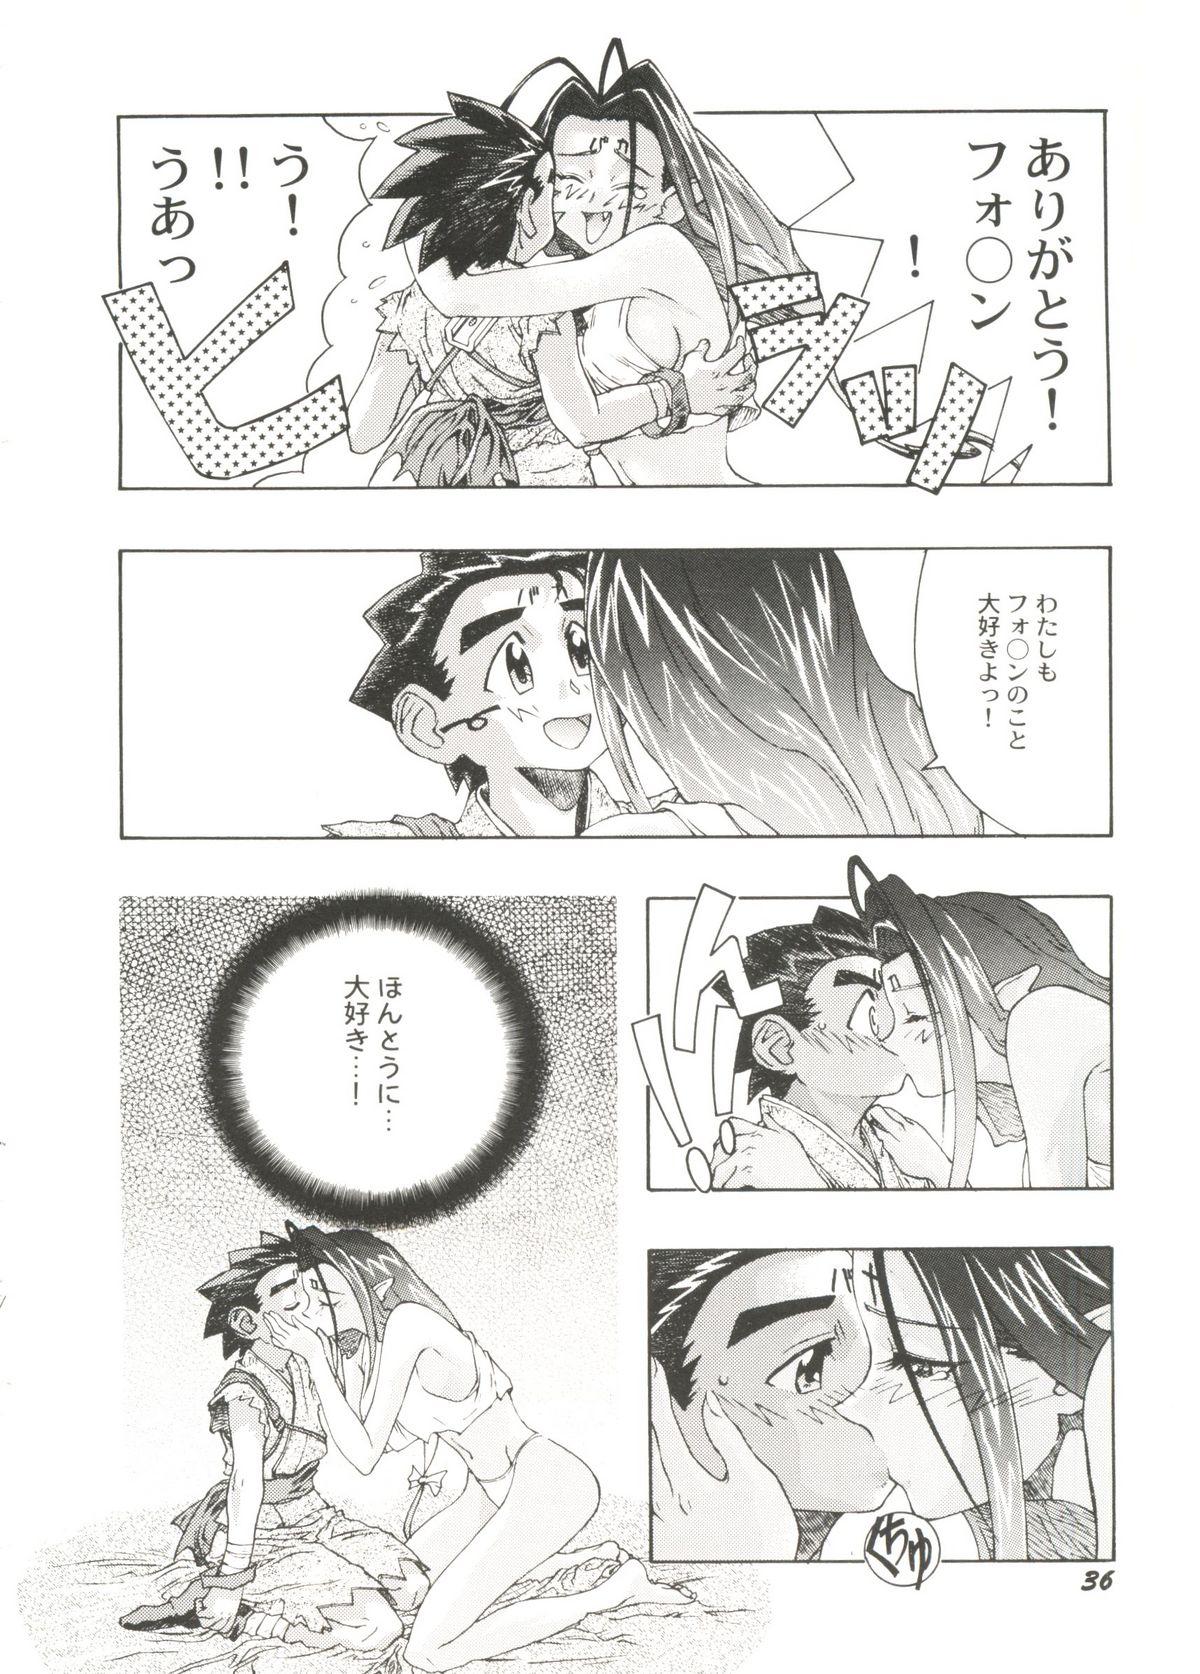 Bishoujo Doujinshi Anthology Cute 3 39